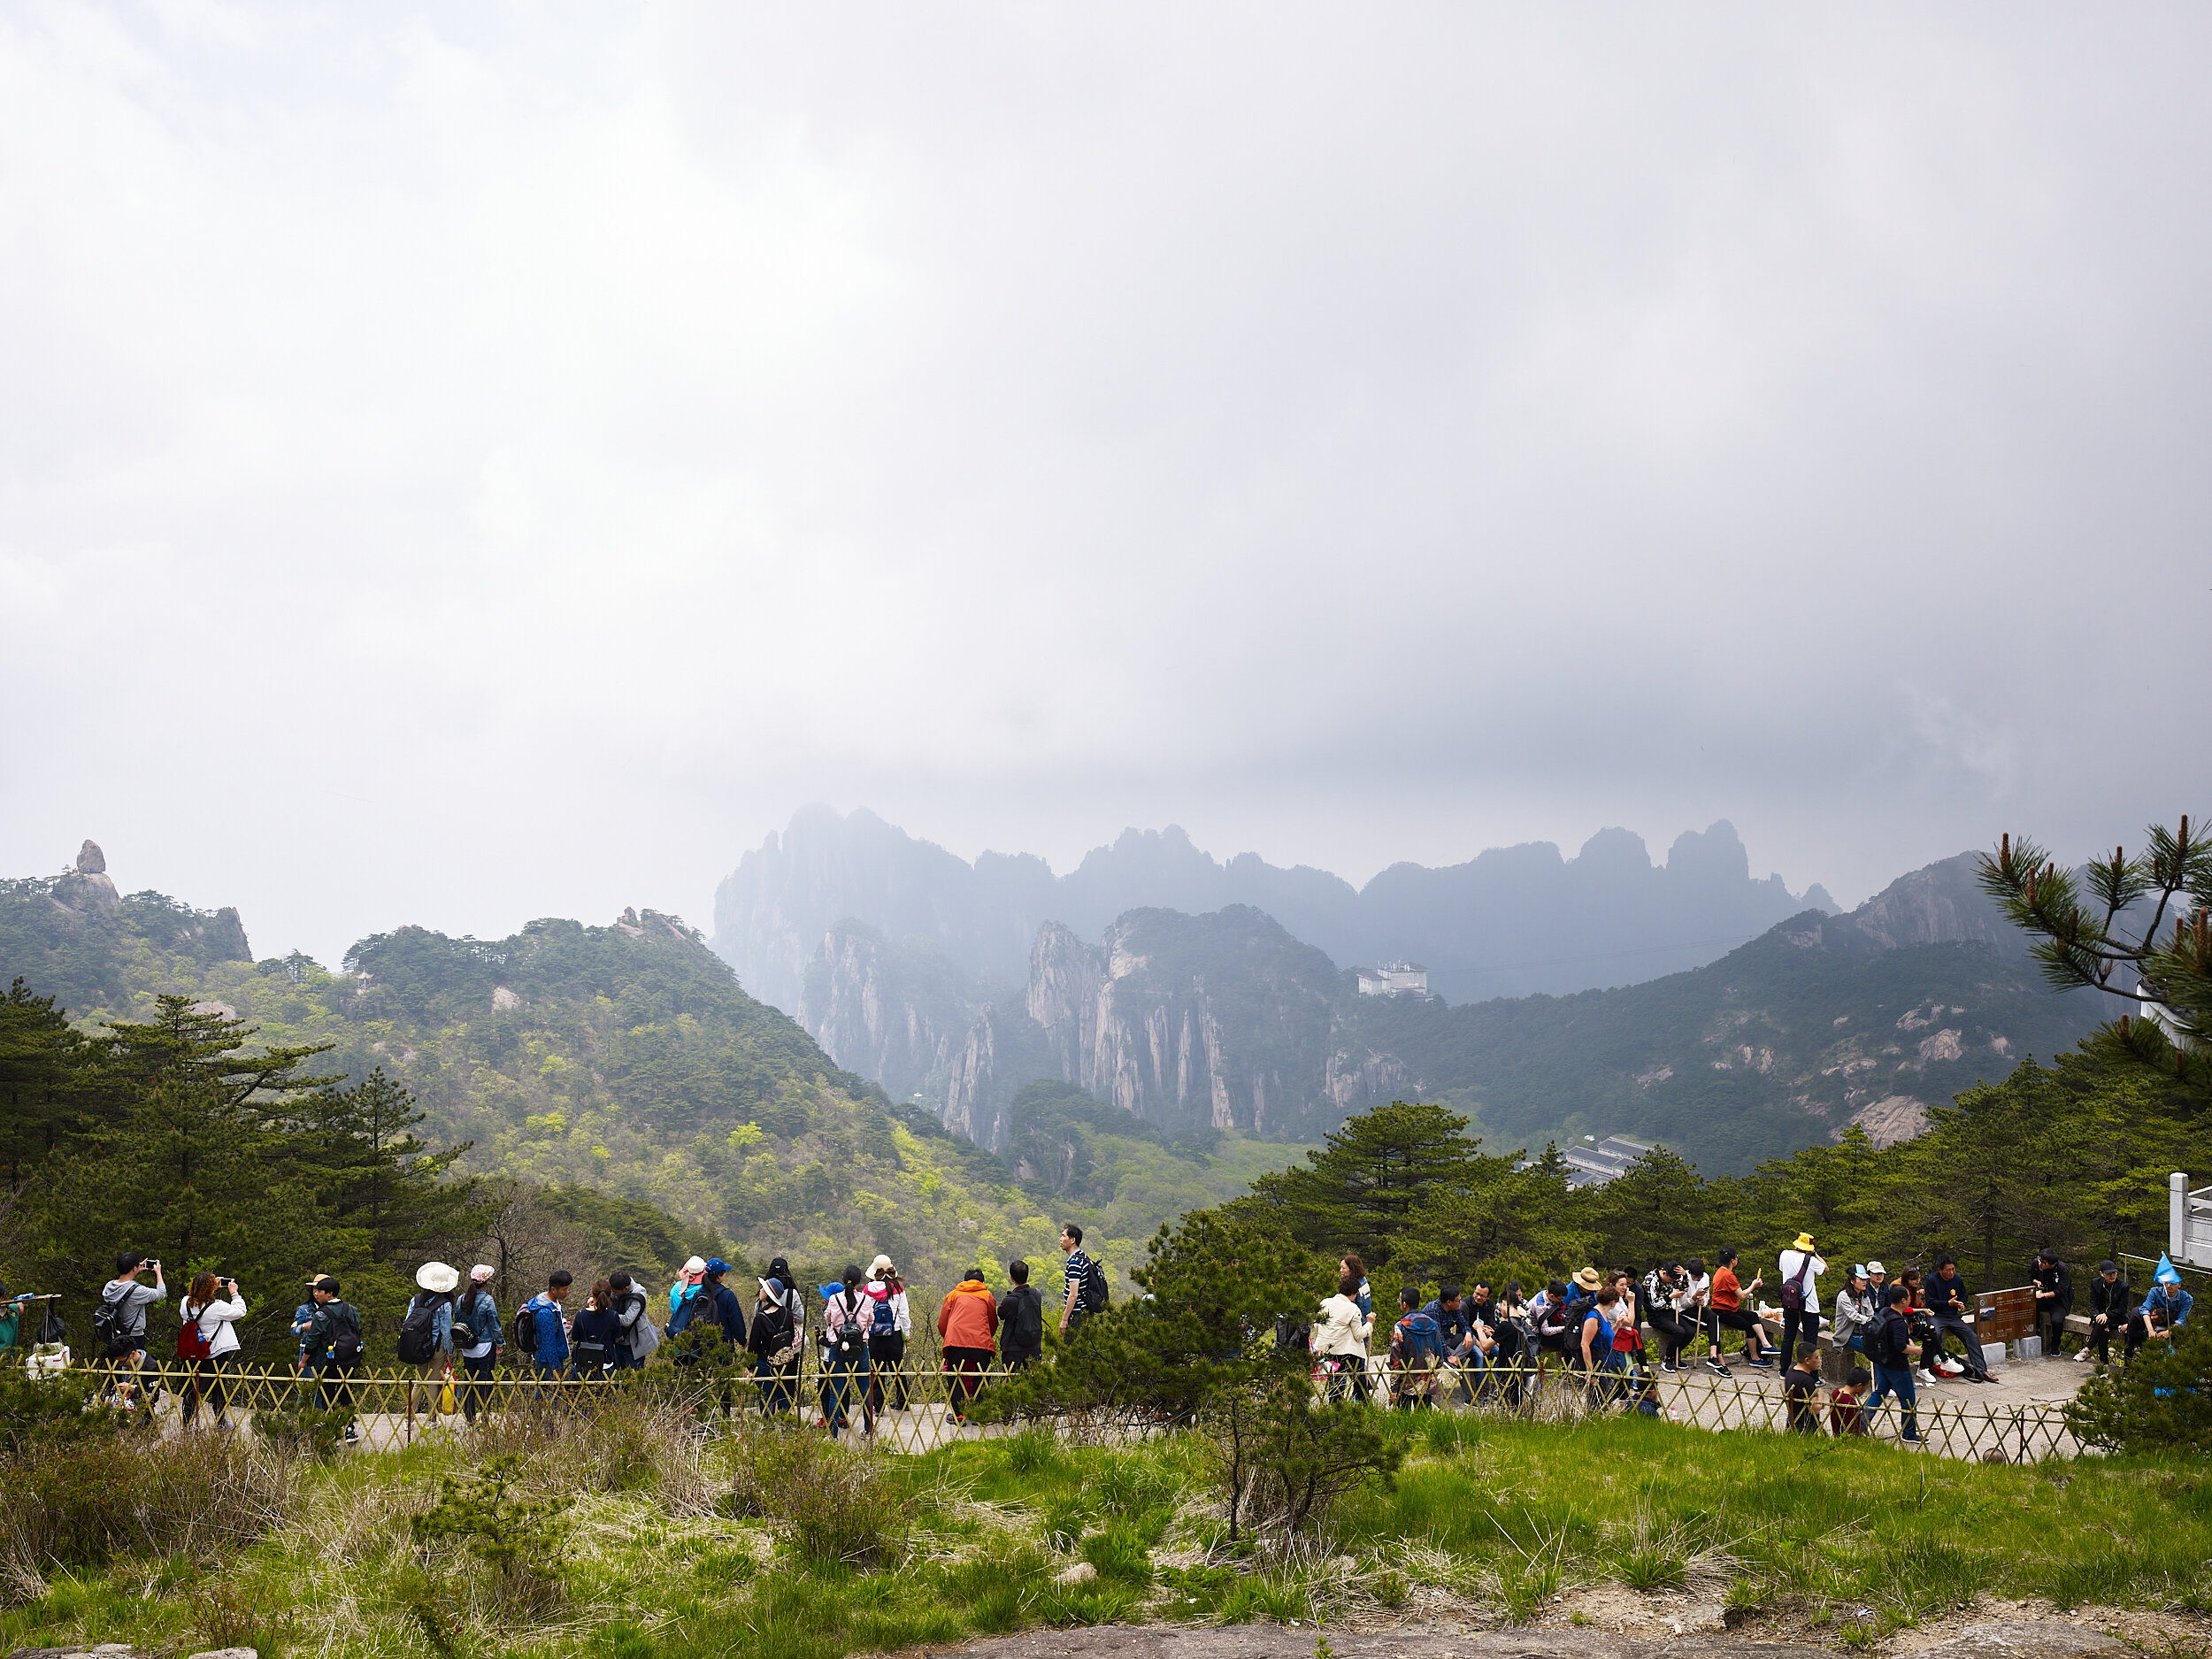  tourists, Huangshan Mountains, China, 2017 